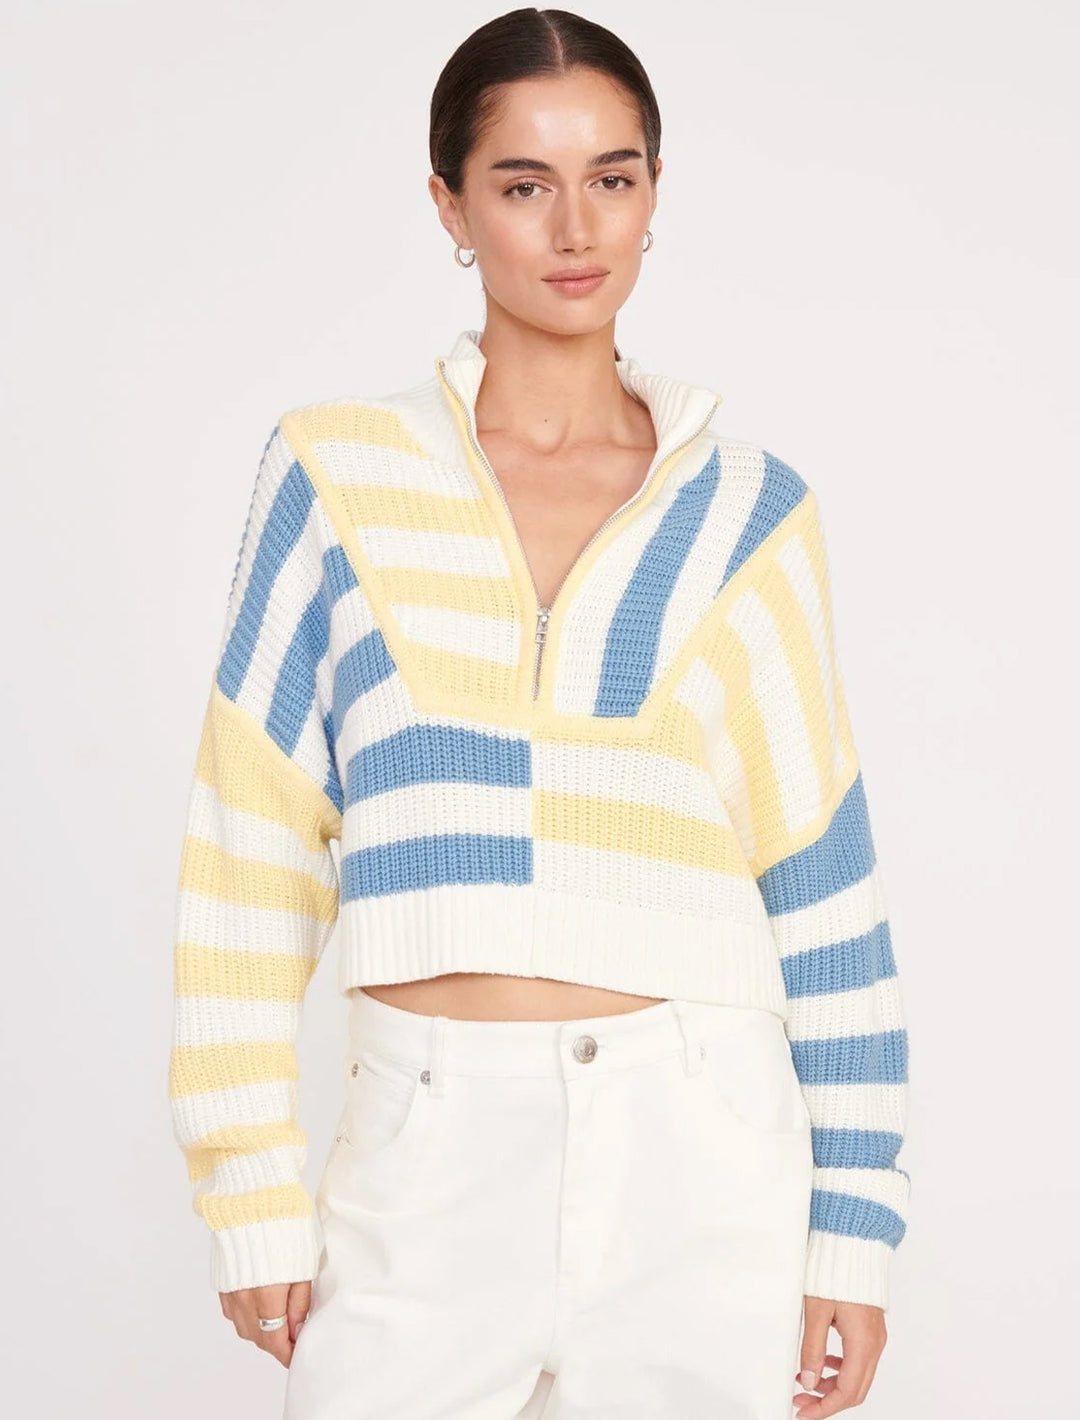 Model wearing STAUD's cropped hampton sweater in buttercup seashore stripe.